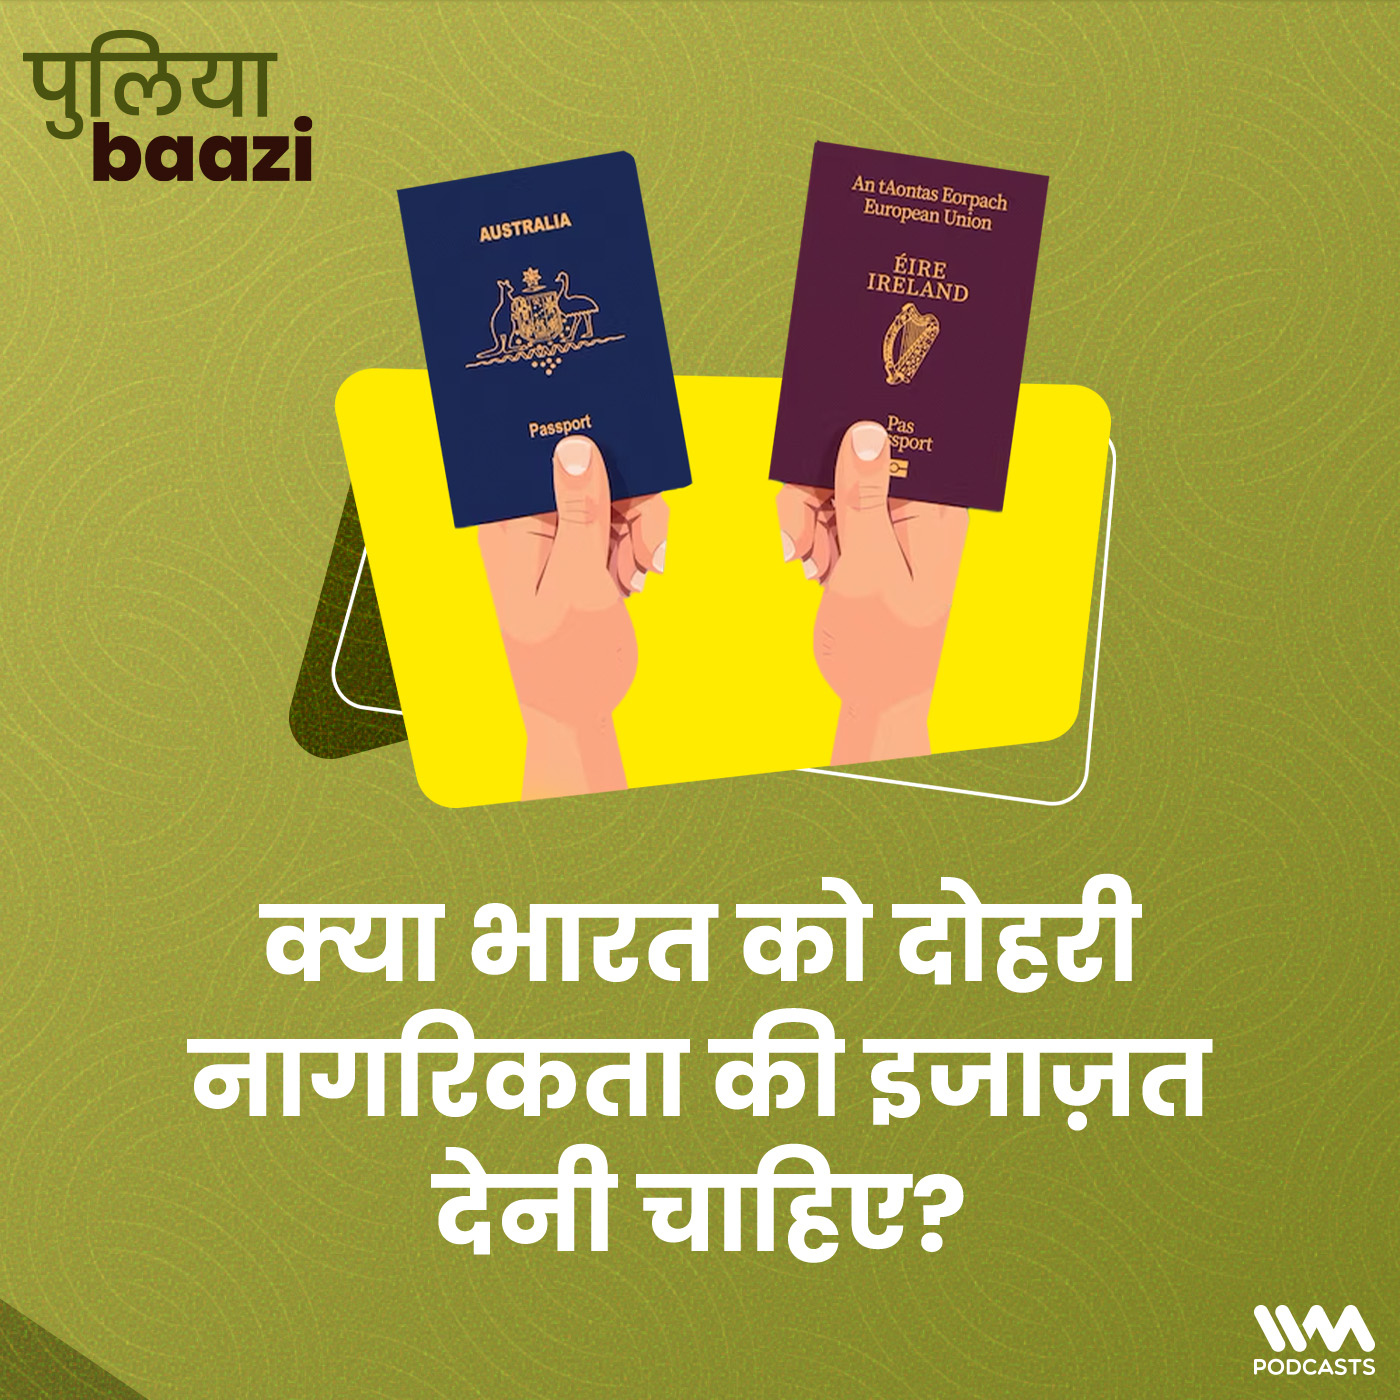 क्या भारत को दोहरी नागरिकता की इजाज़त देनी चाहिए? Should India allow dual citizenship?